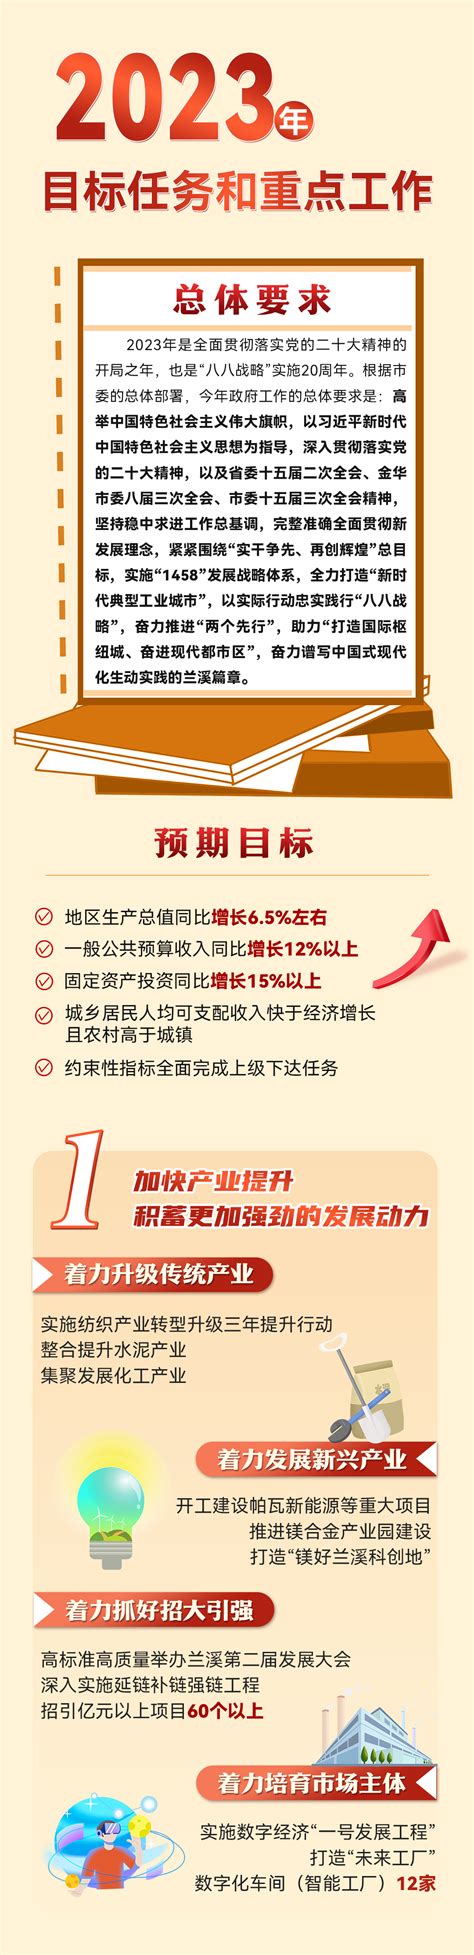 图 解-连云港市2021年政府工作报告（中英对照）